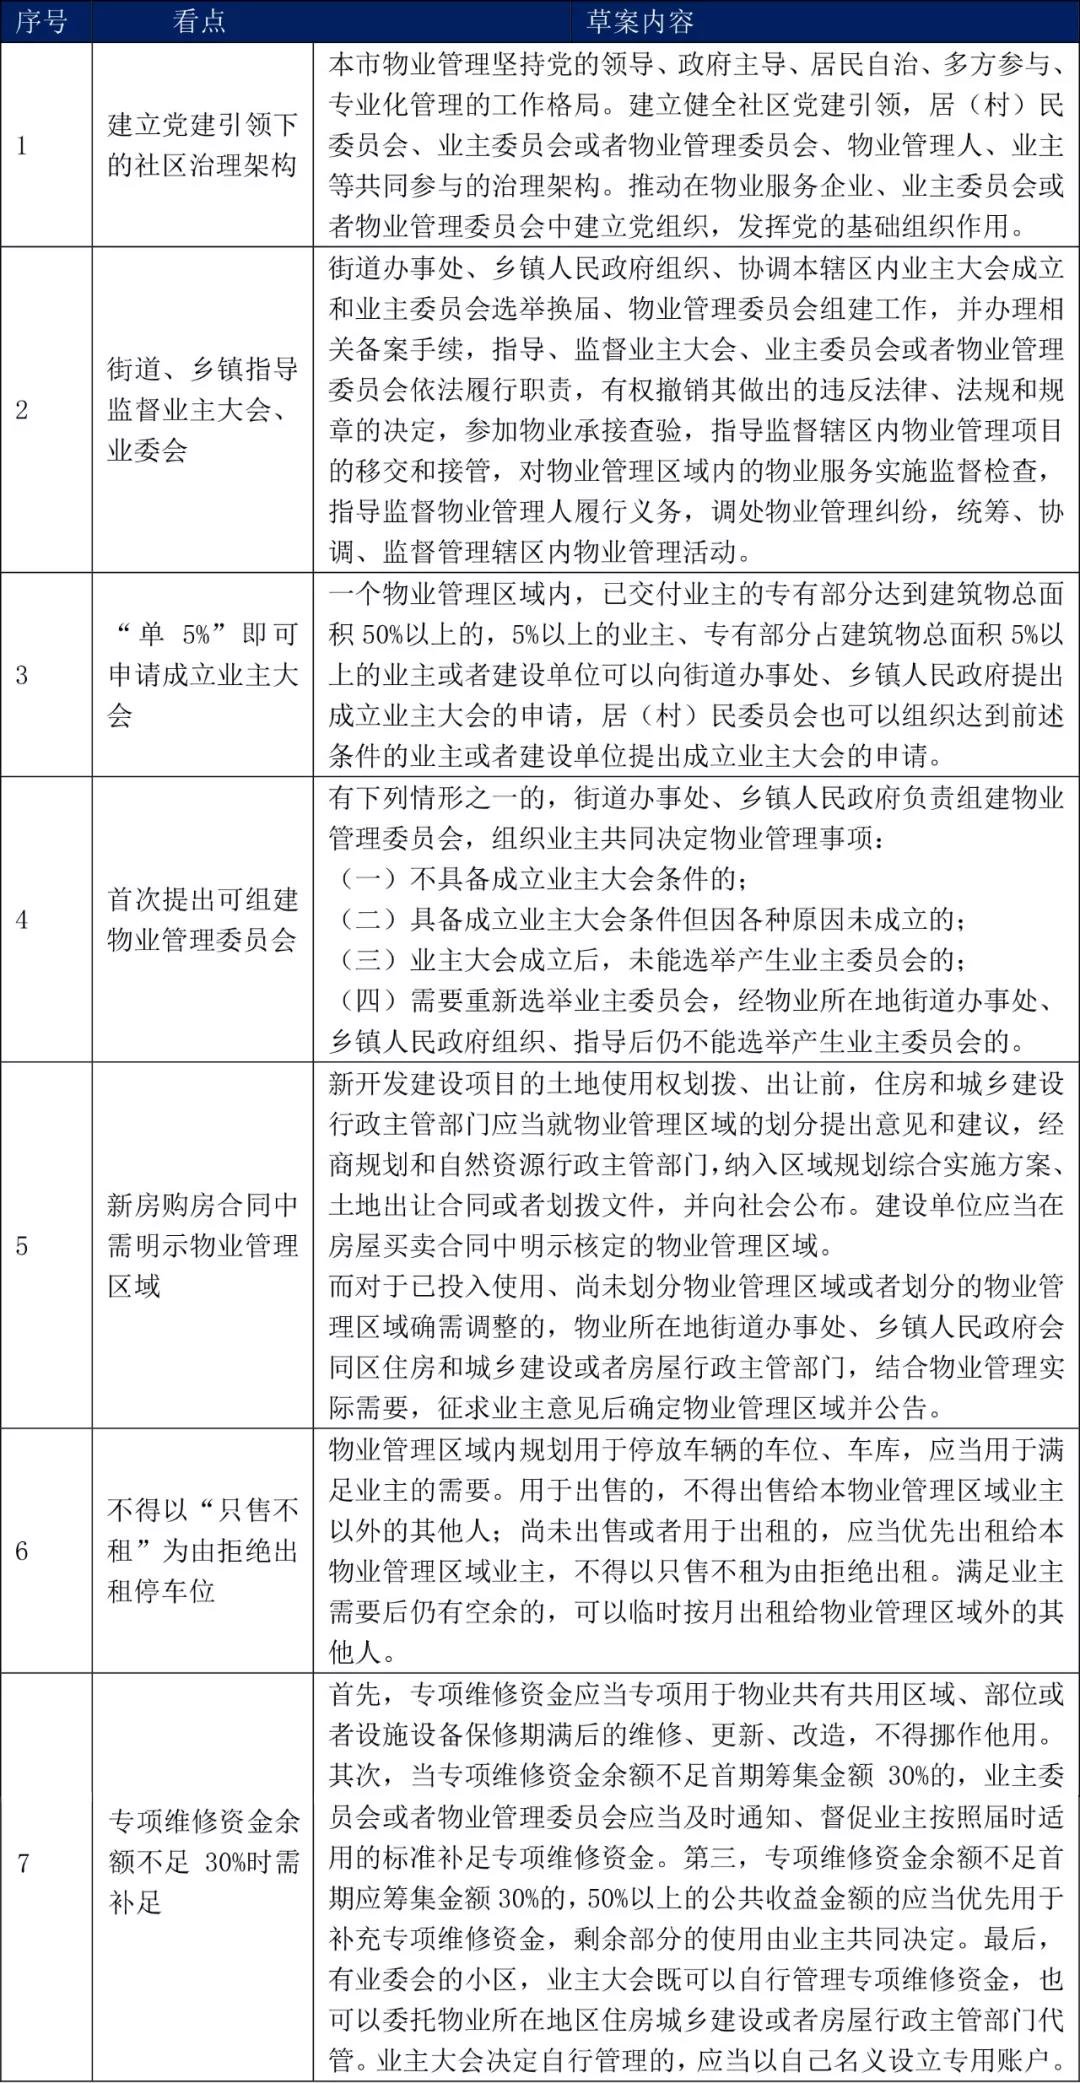 北京市物业管理条例公开征求意见 物业费动态调整成看点